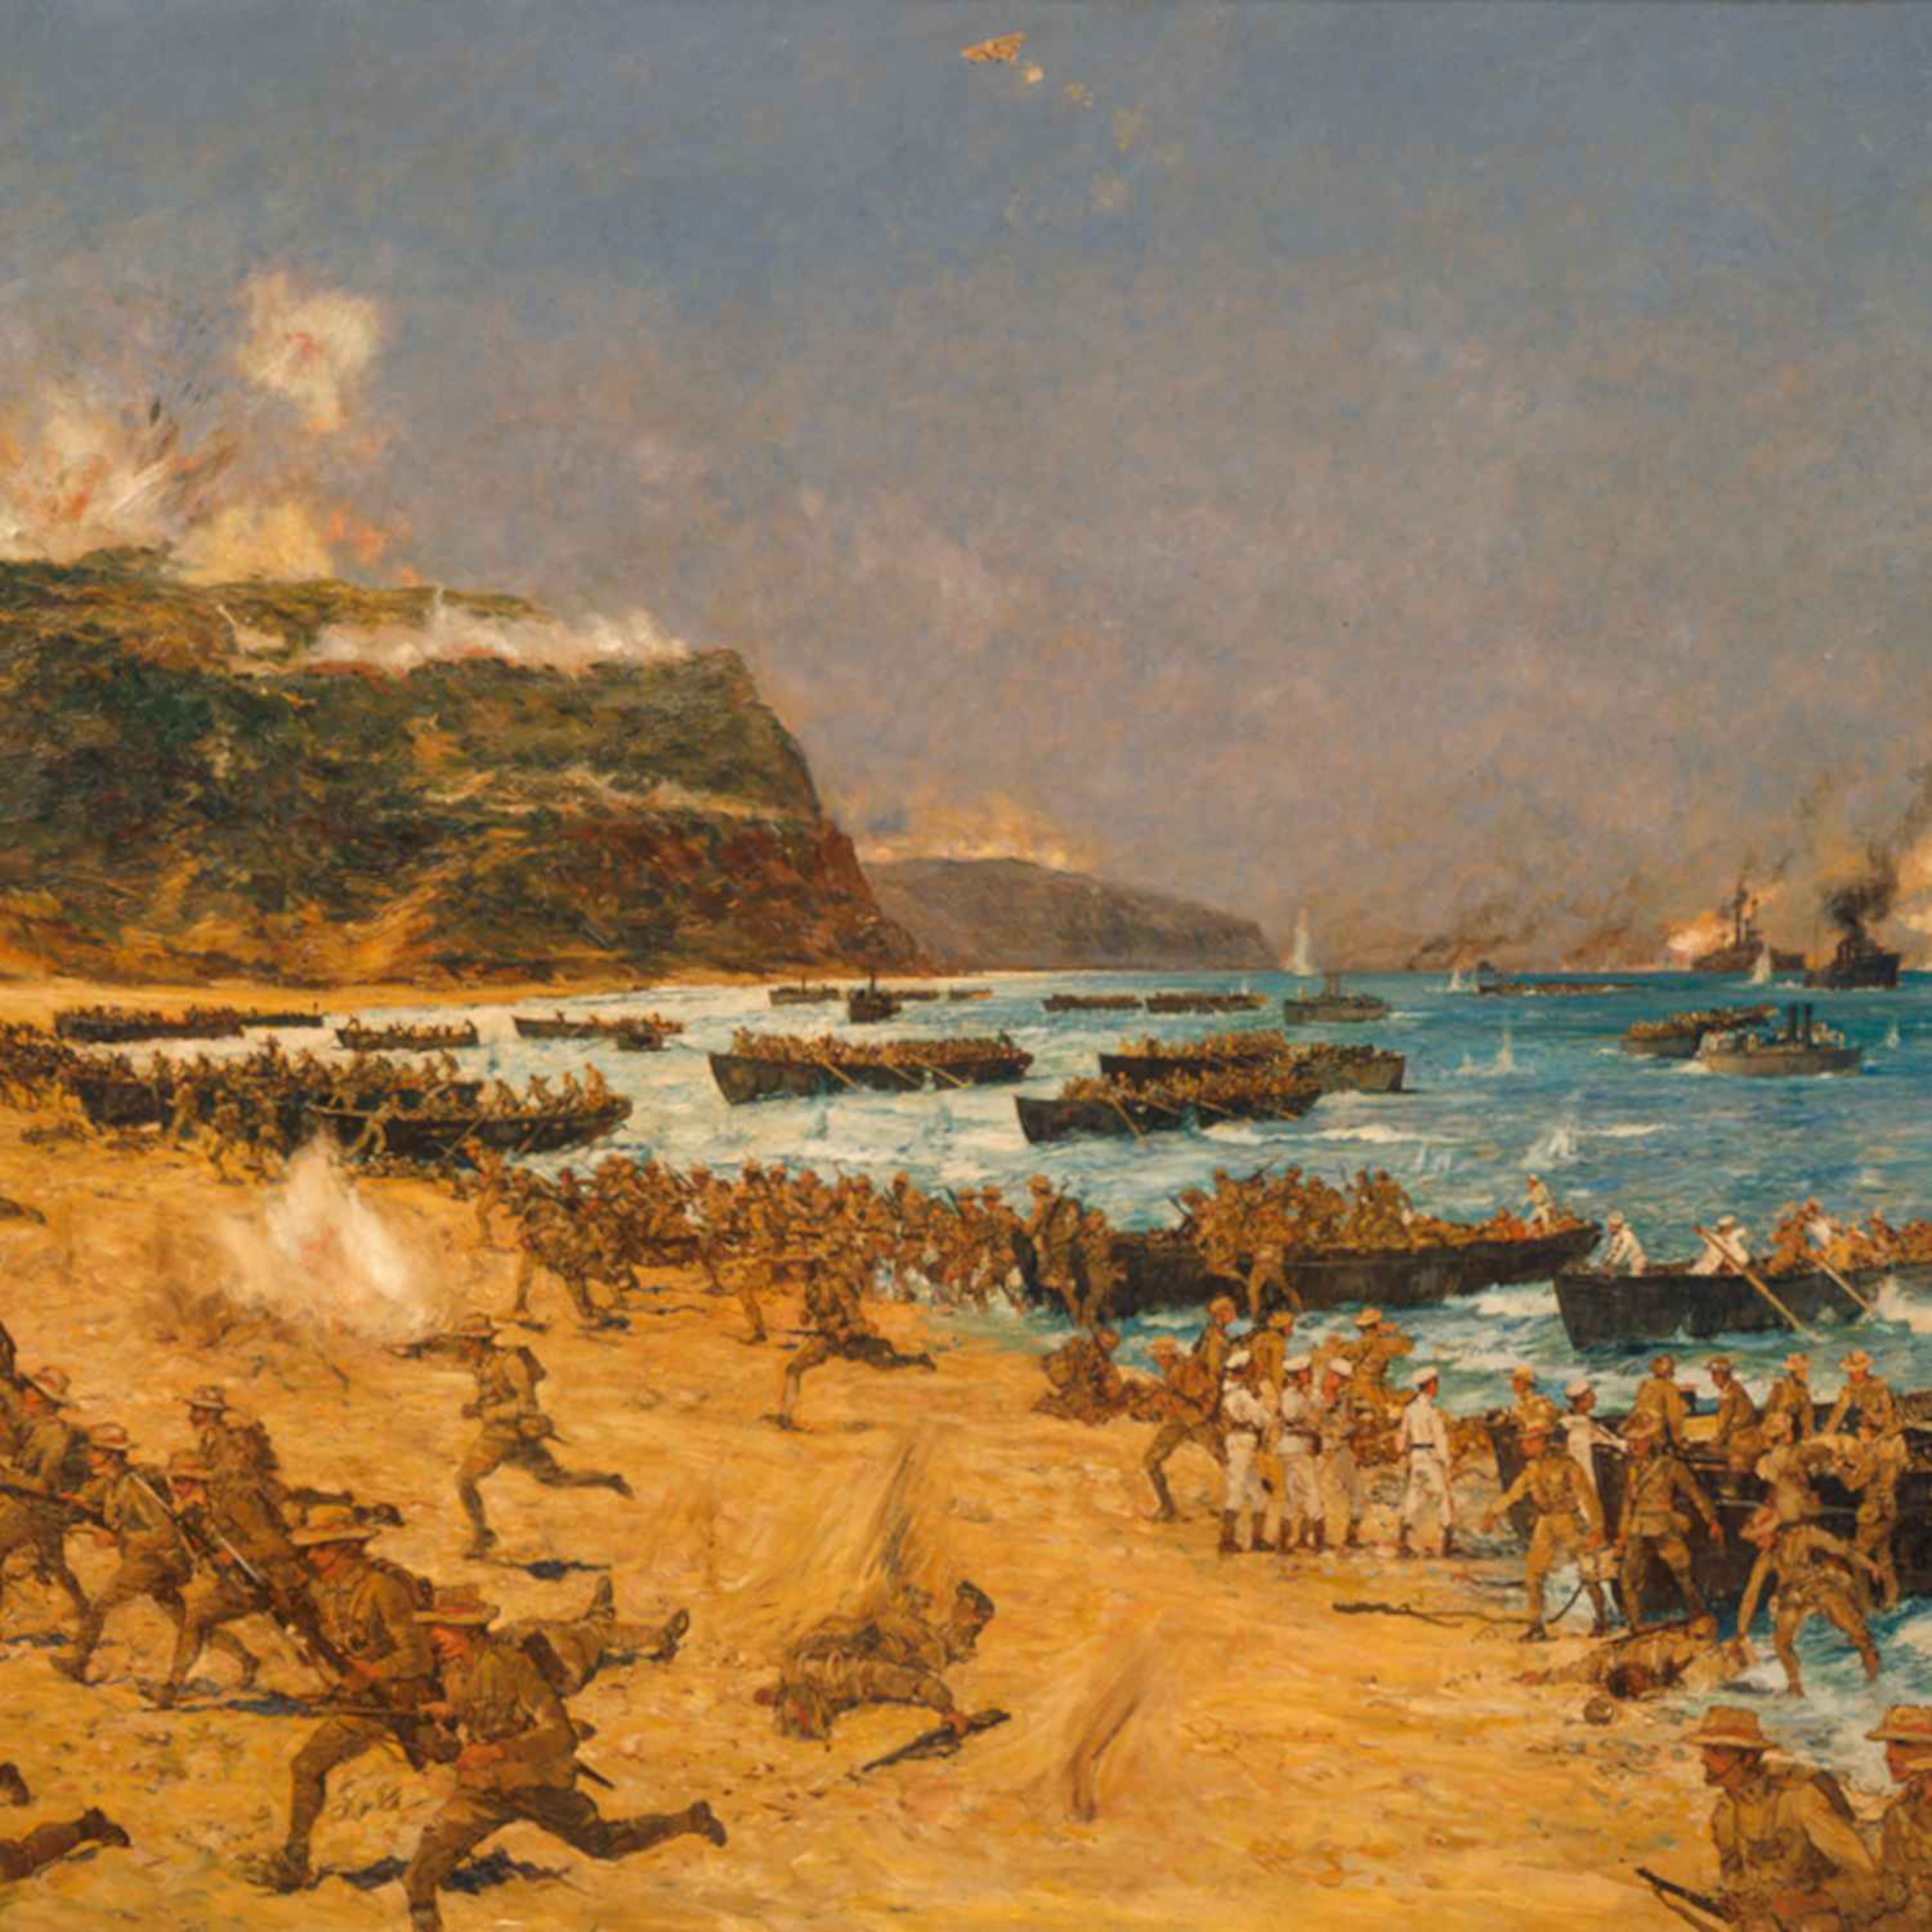 Episode 304: The ANZAC Campaign in Gallipoli